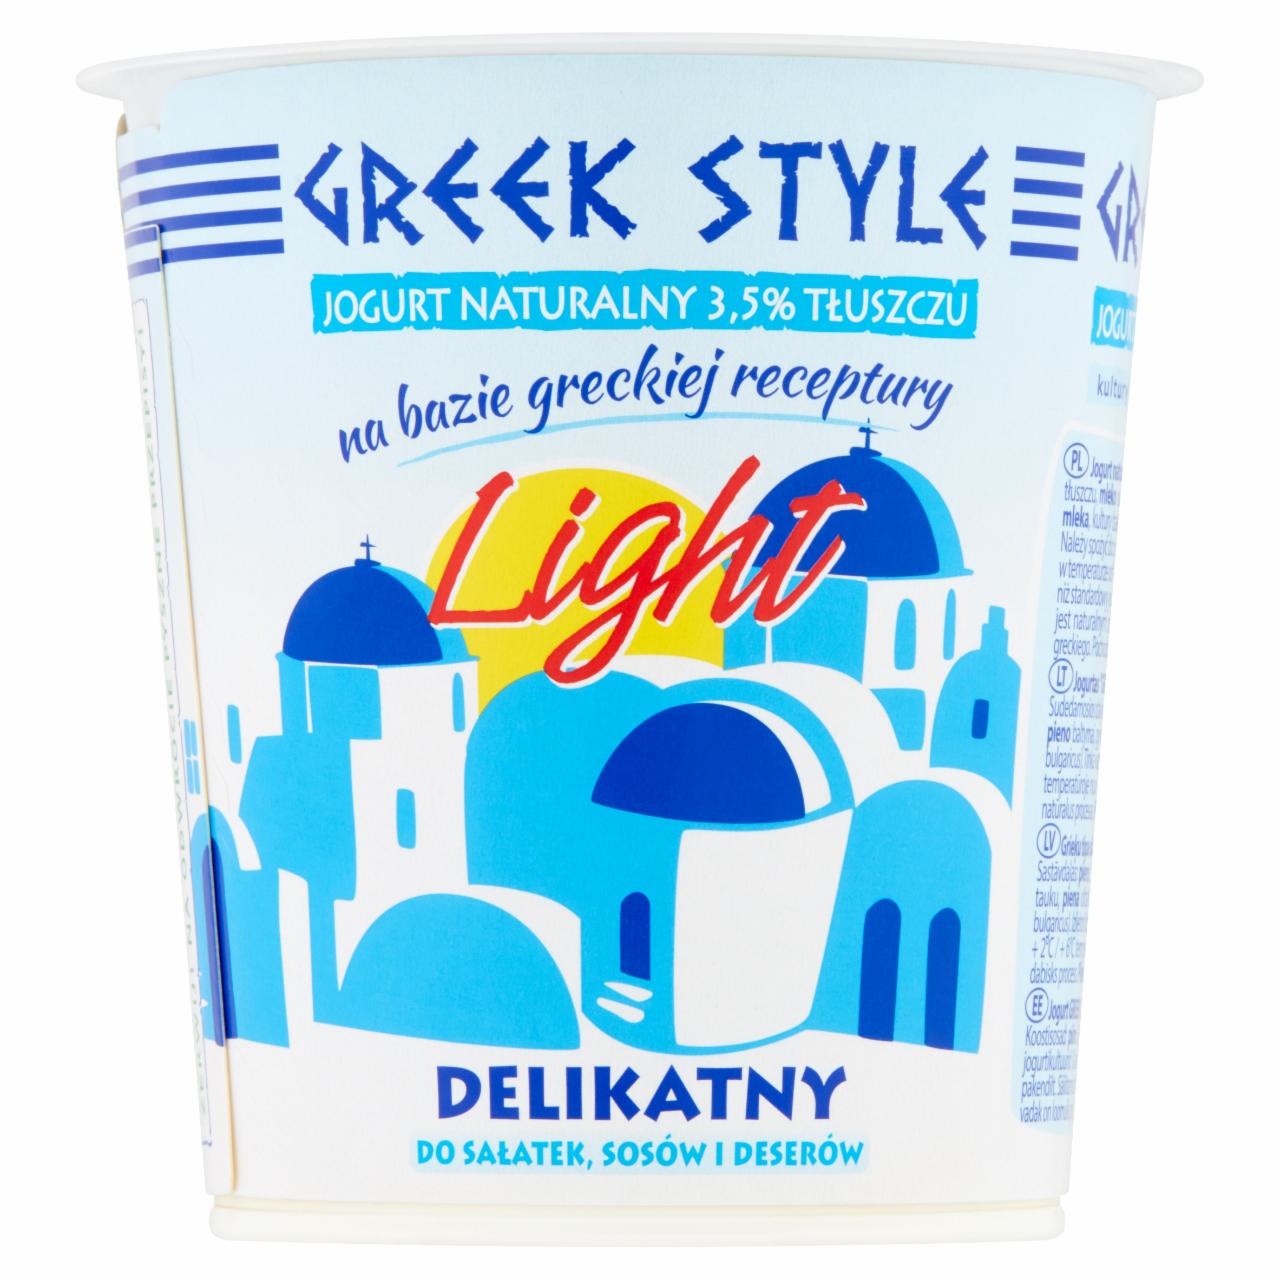 Zdjęcia - Greek Style Jogurt naturalny 3,5% tłuszczu 340 g